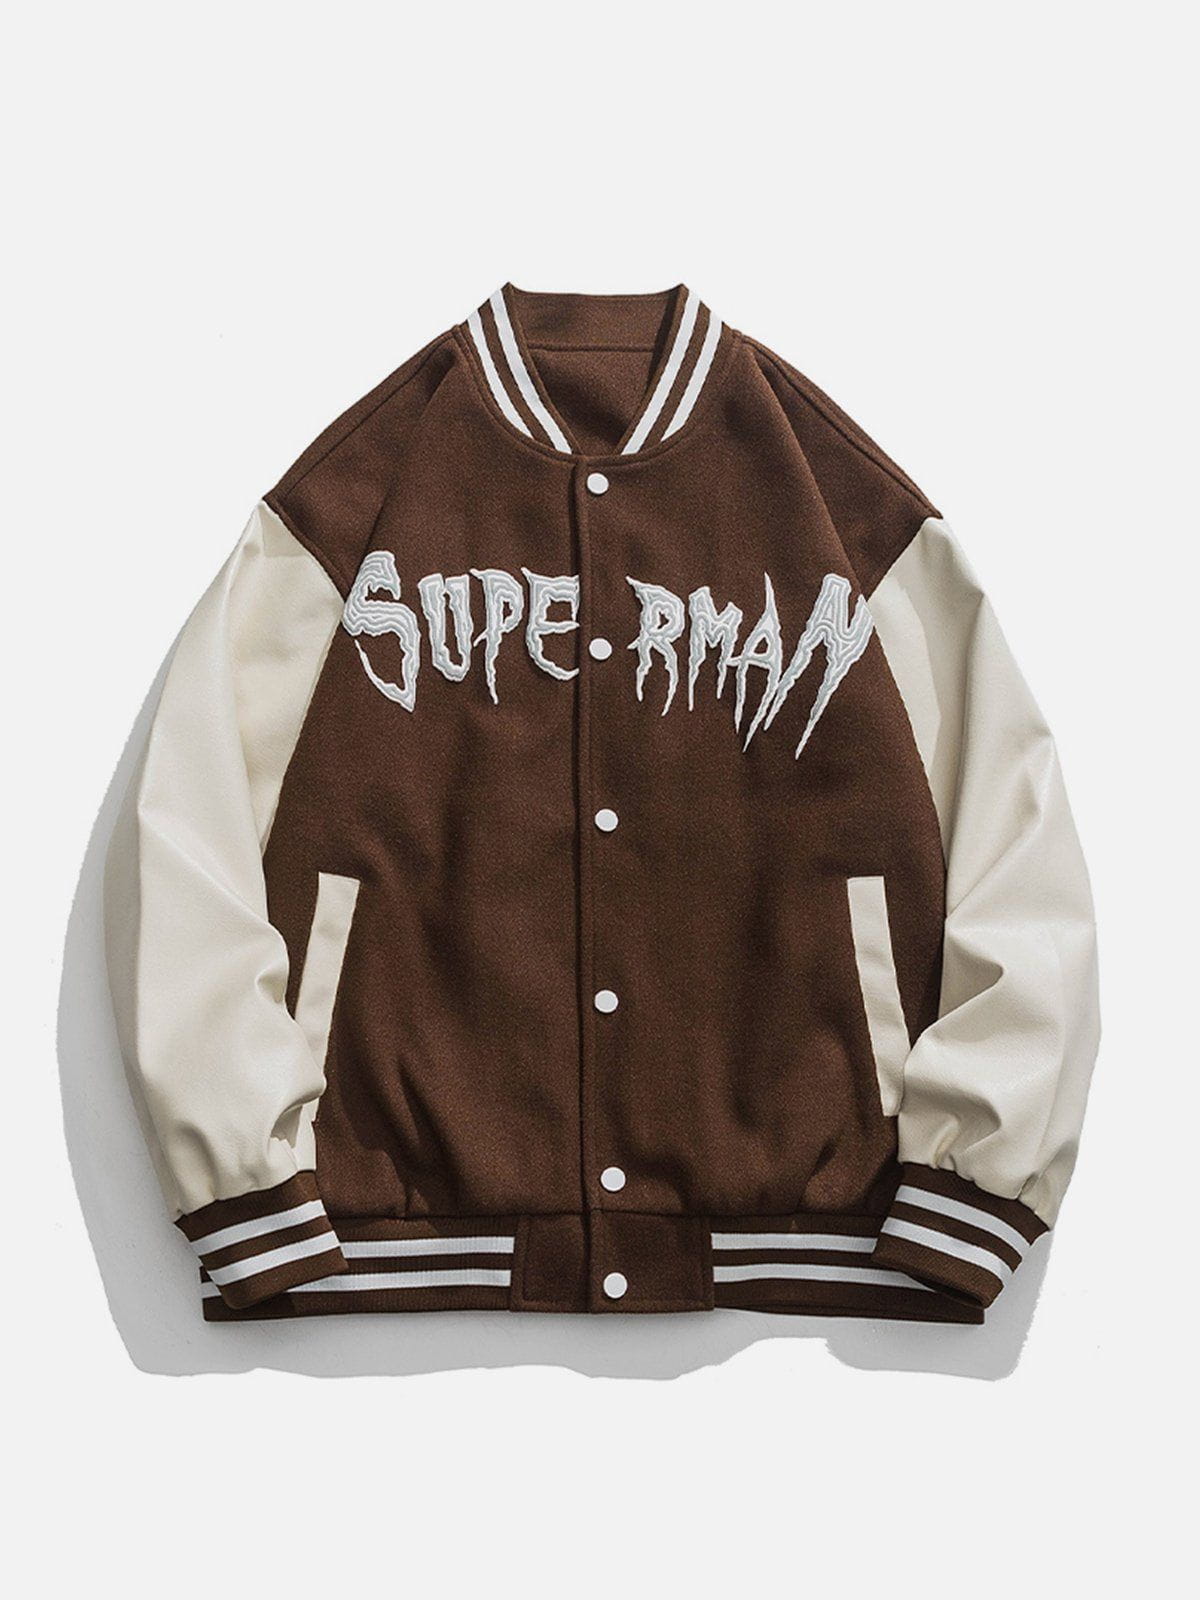 superman leather jacket - Gem